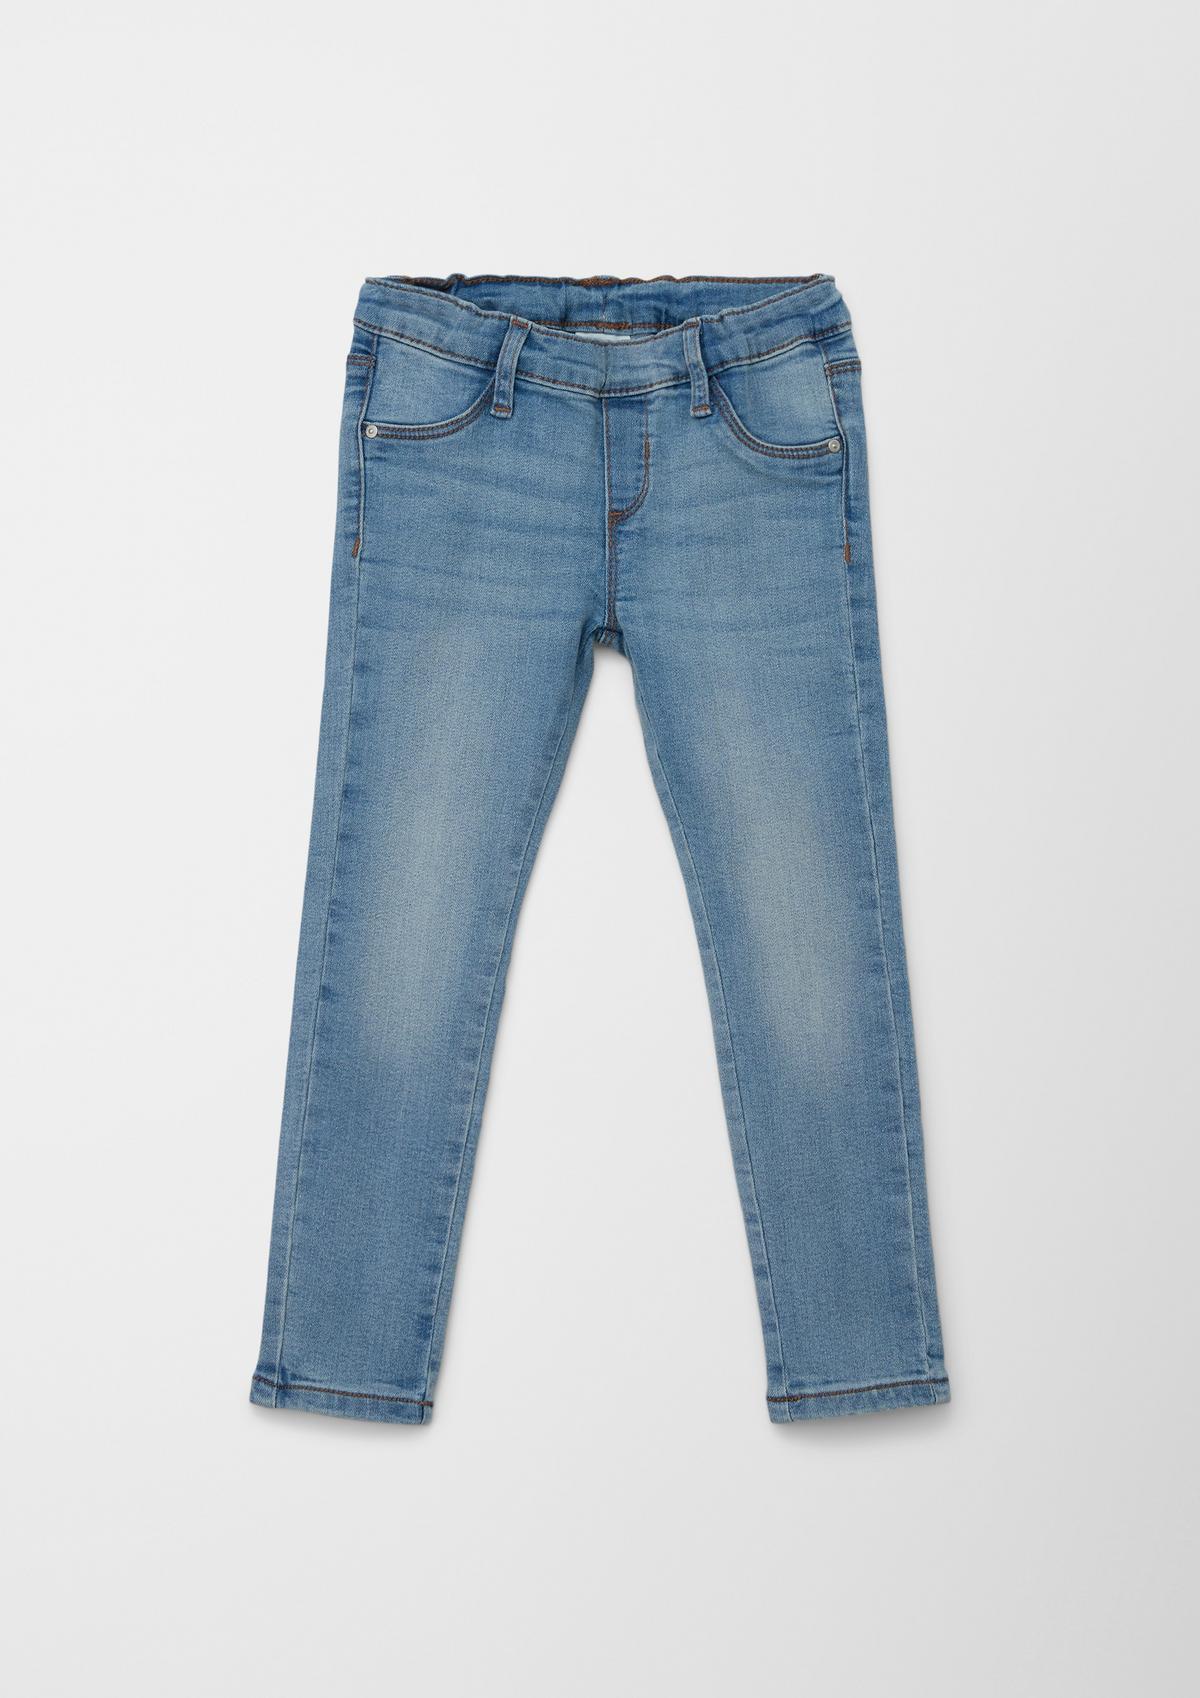 s.Oliver Jeans hlače hlačne pajkice / kroj Regular Fit/ High Rise / Tapered Leg